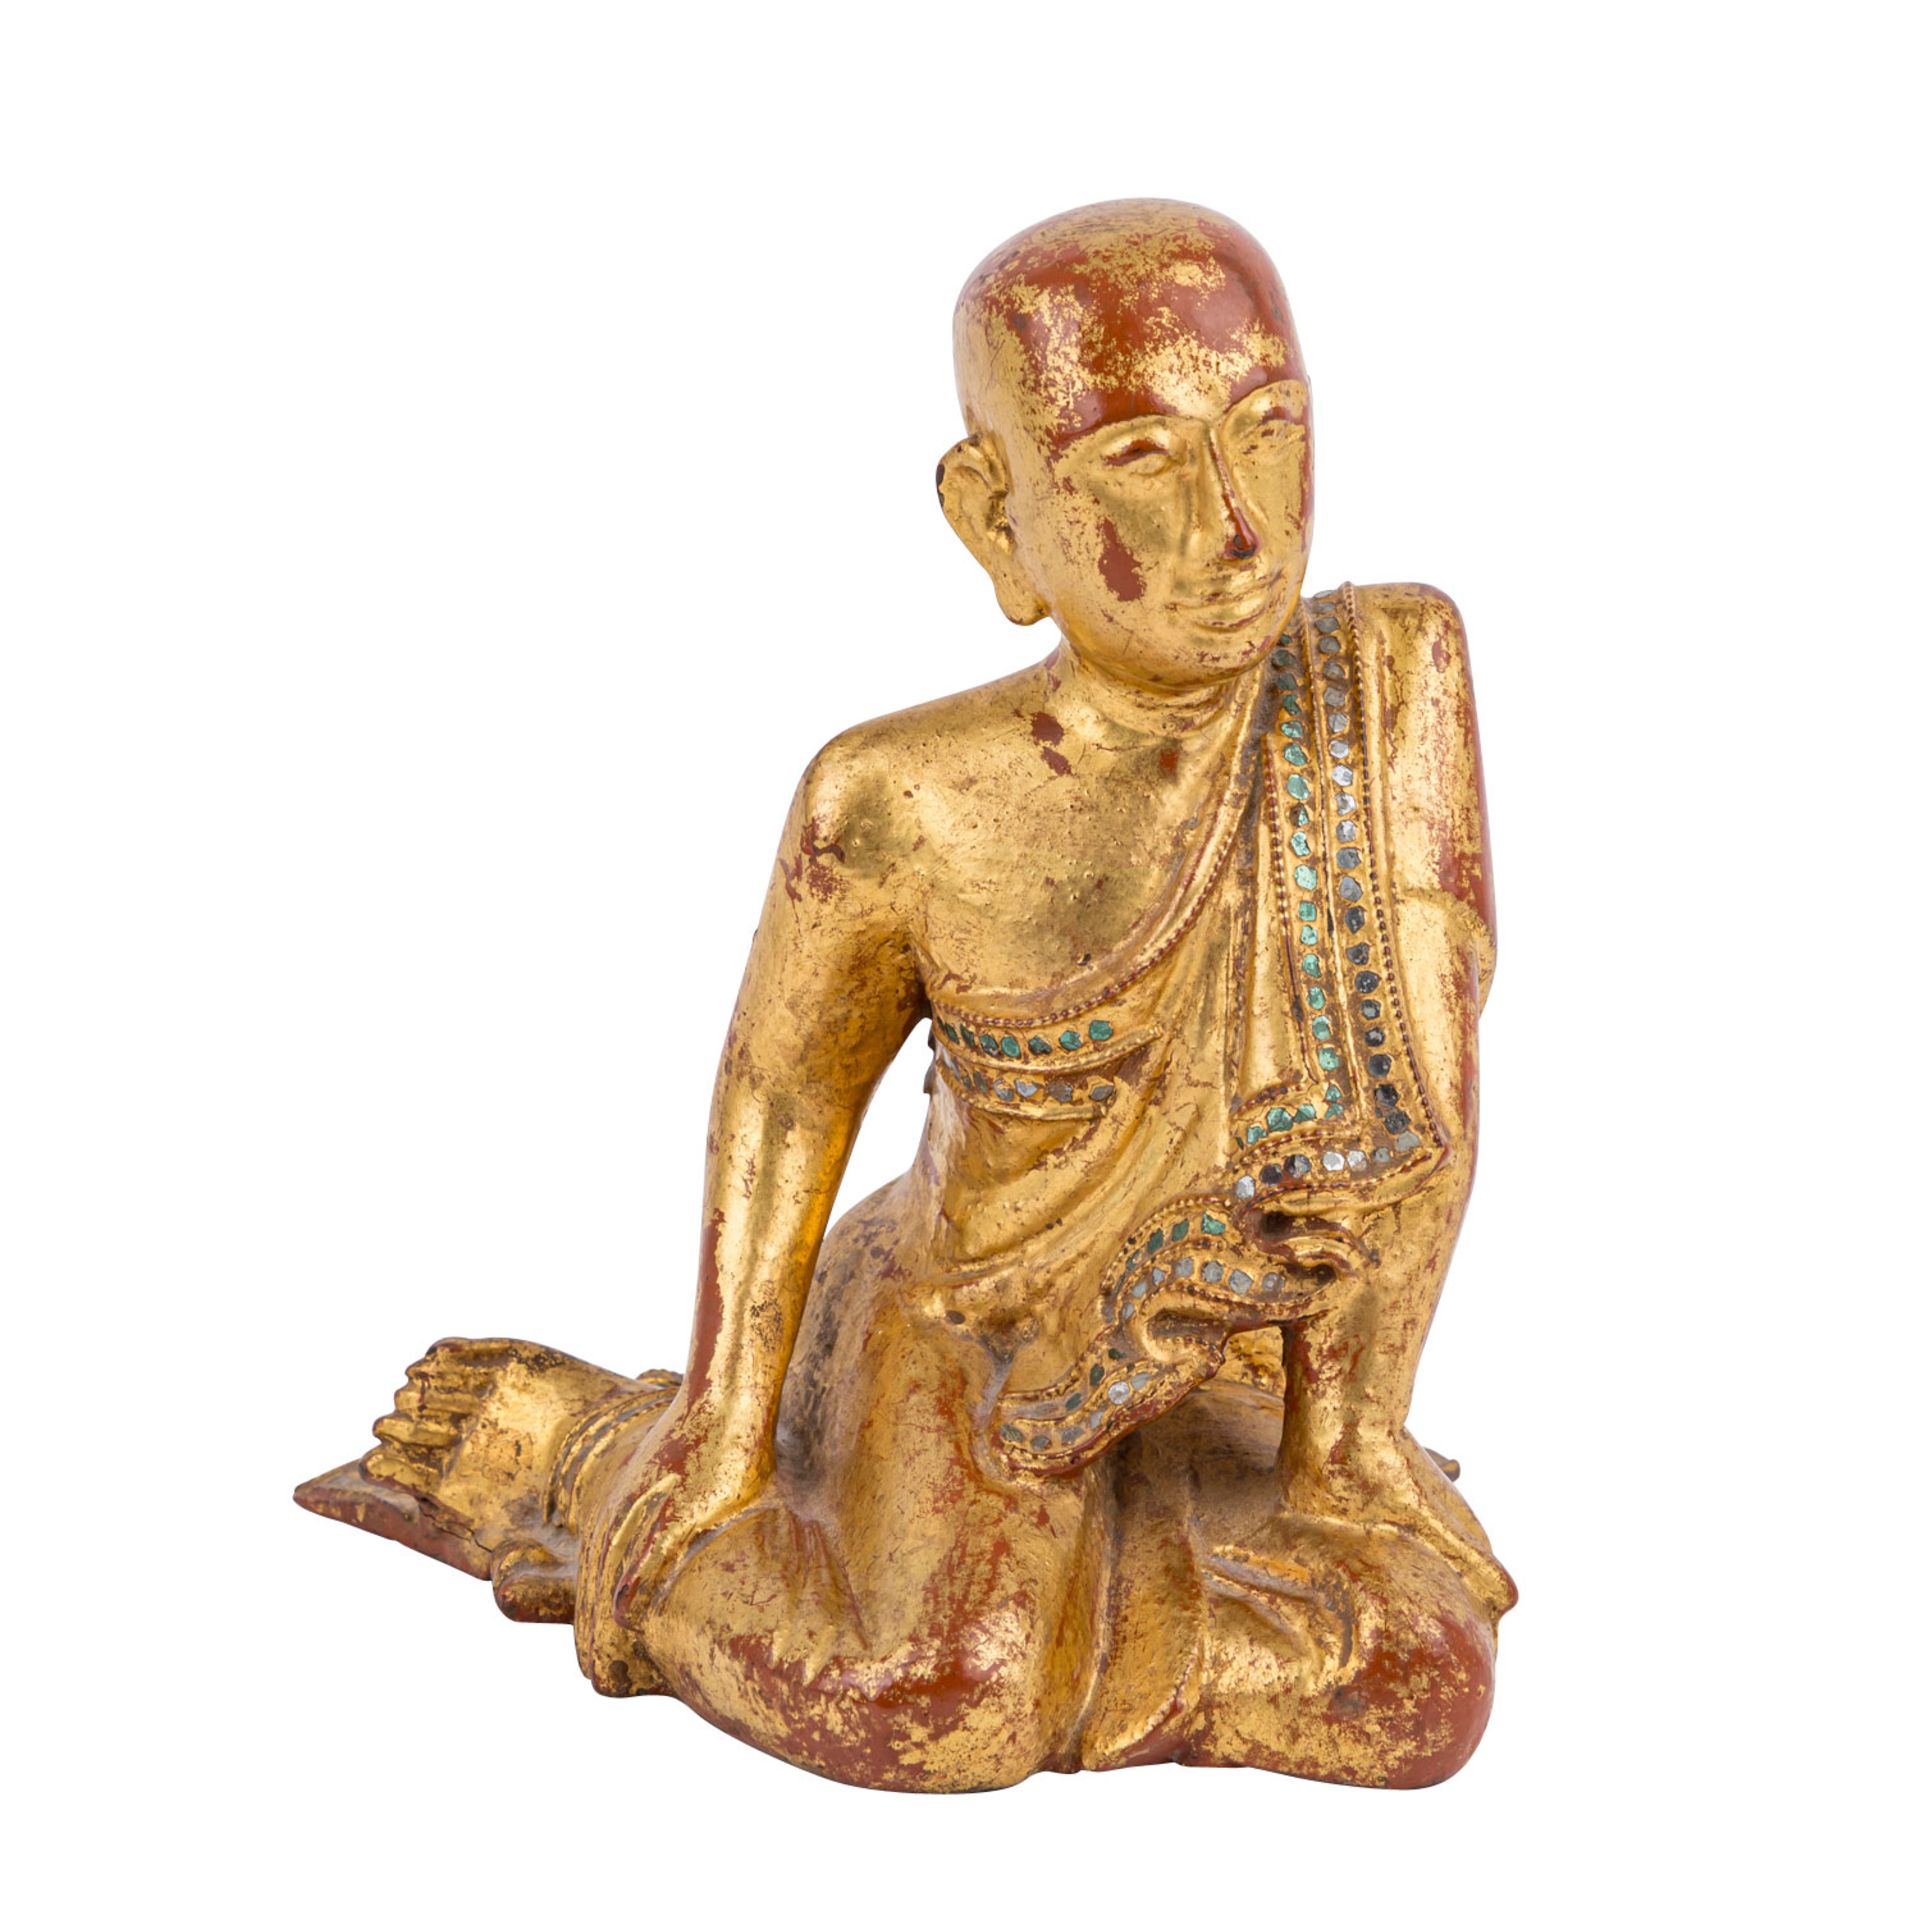 Skulptur eines Mönches aus Holz. BURMA, wohl um 1800.Knieende Darstellung, mehrfach lackiert (